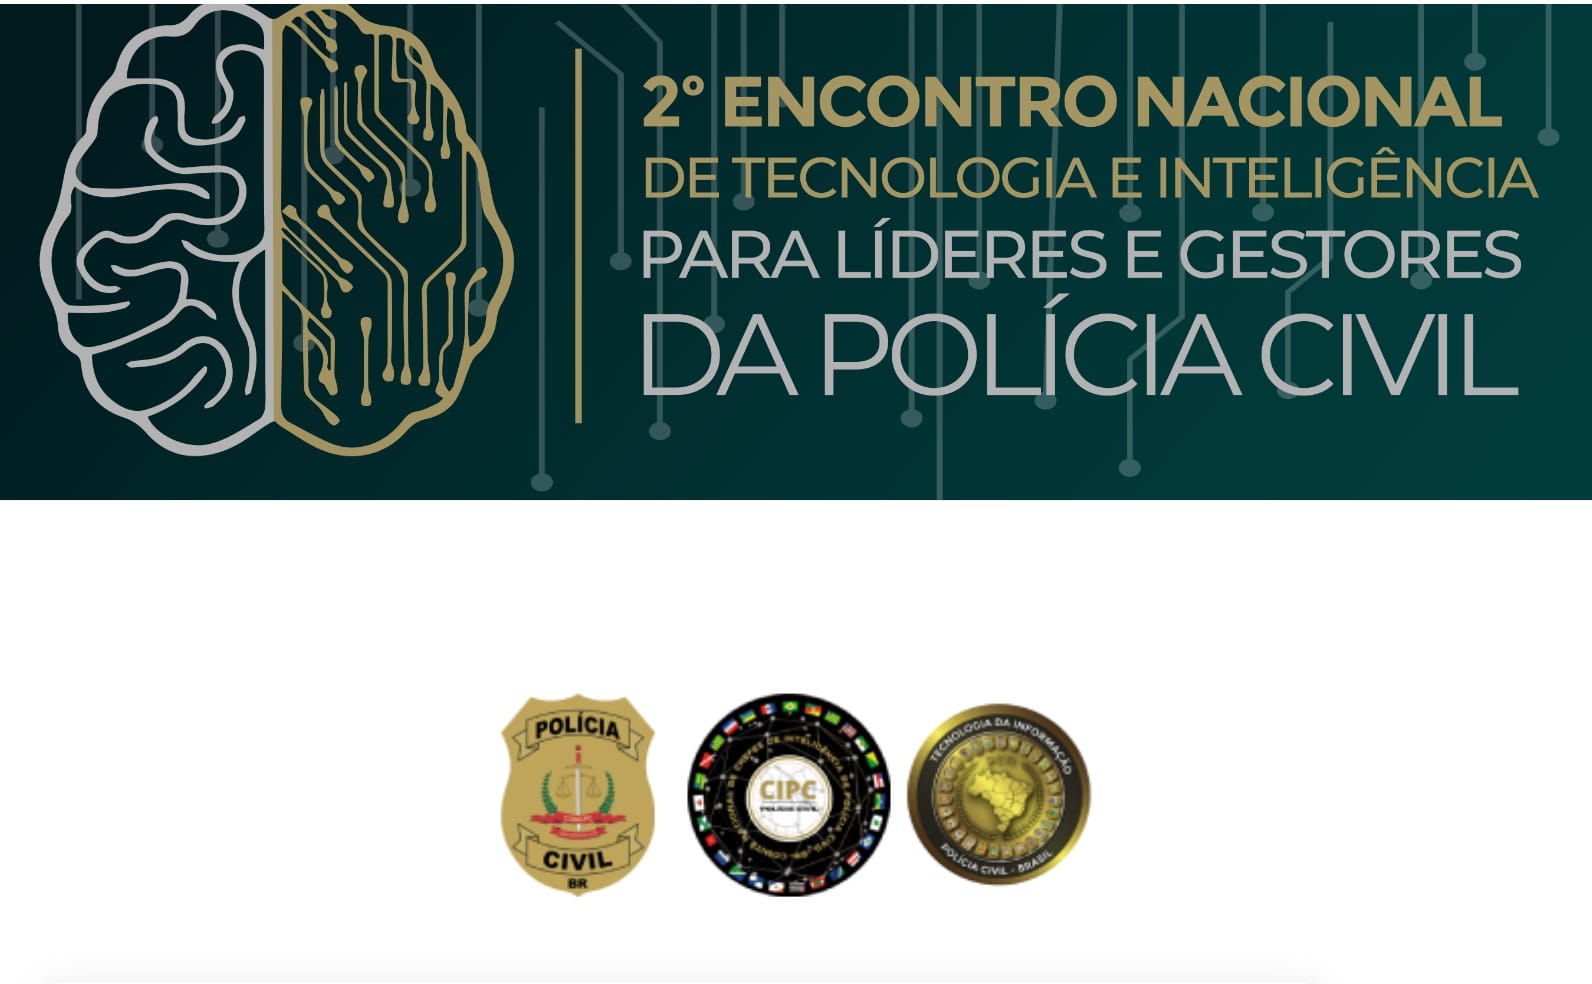 Encontro nacional de gestores das Polícias Civis debate tecnologia e inteligência em Santa Catarina